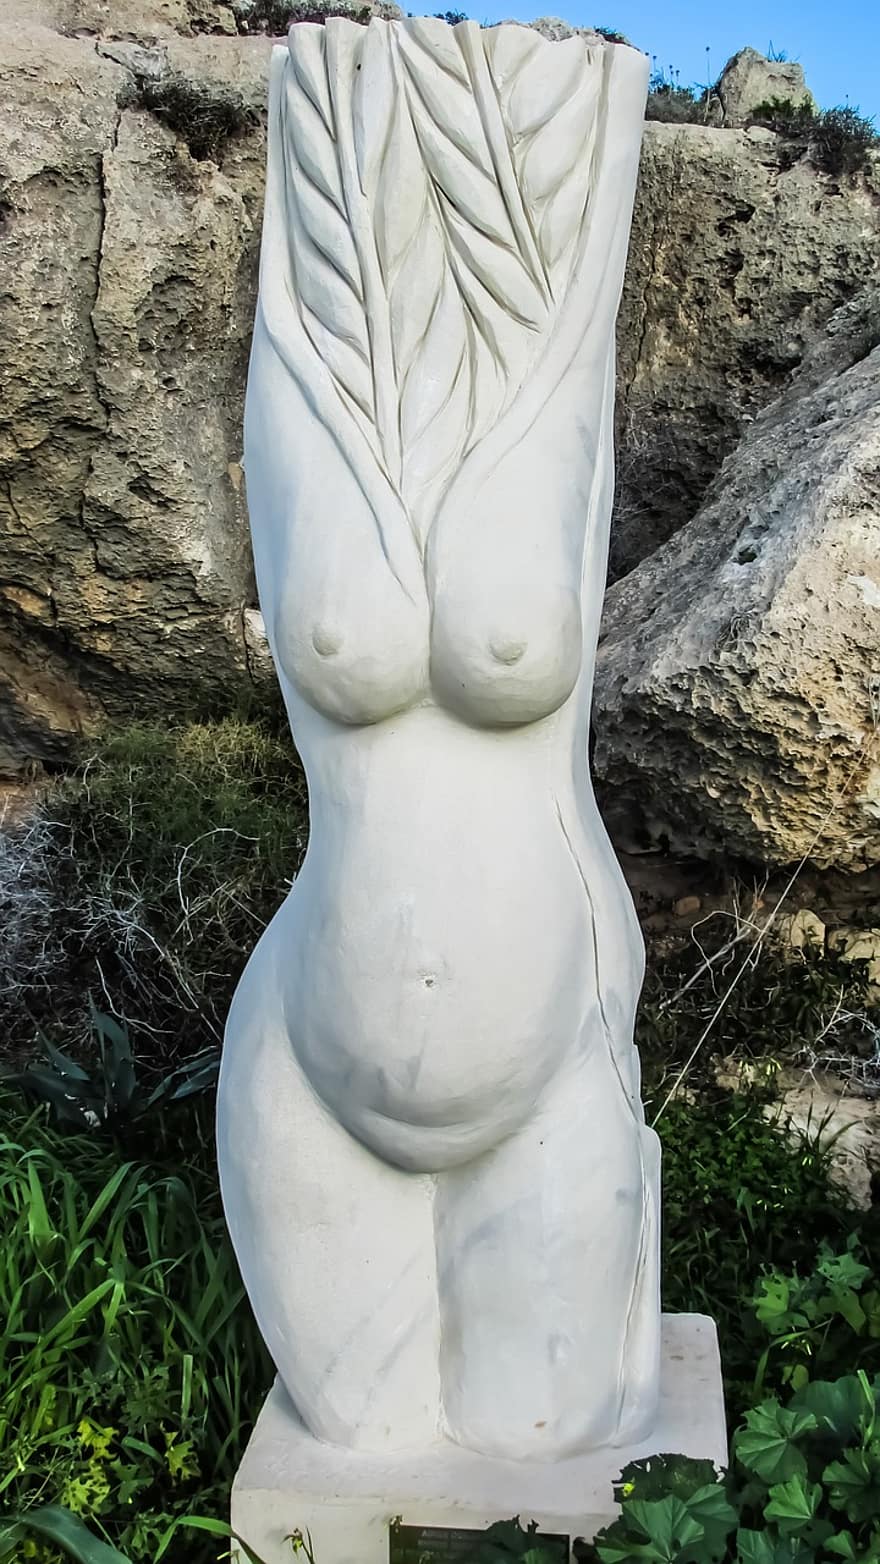 Kipras, aiaia napa, skulptūrų parkas, vaisingumą